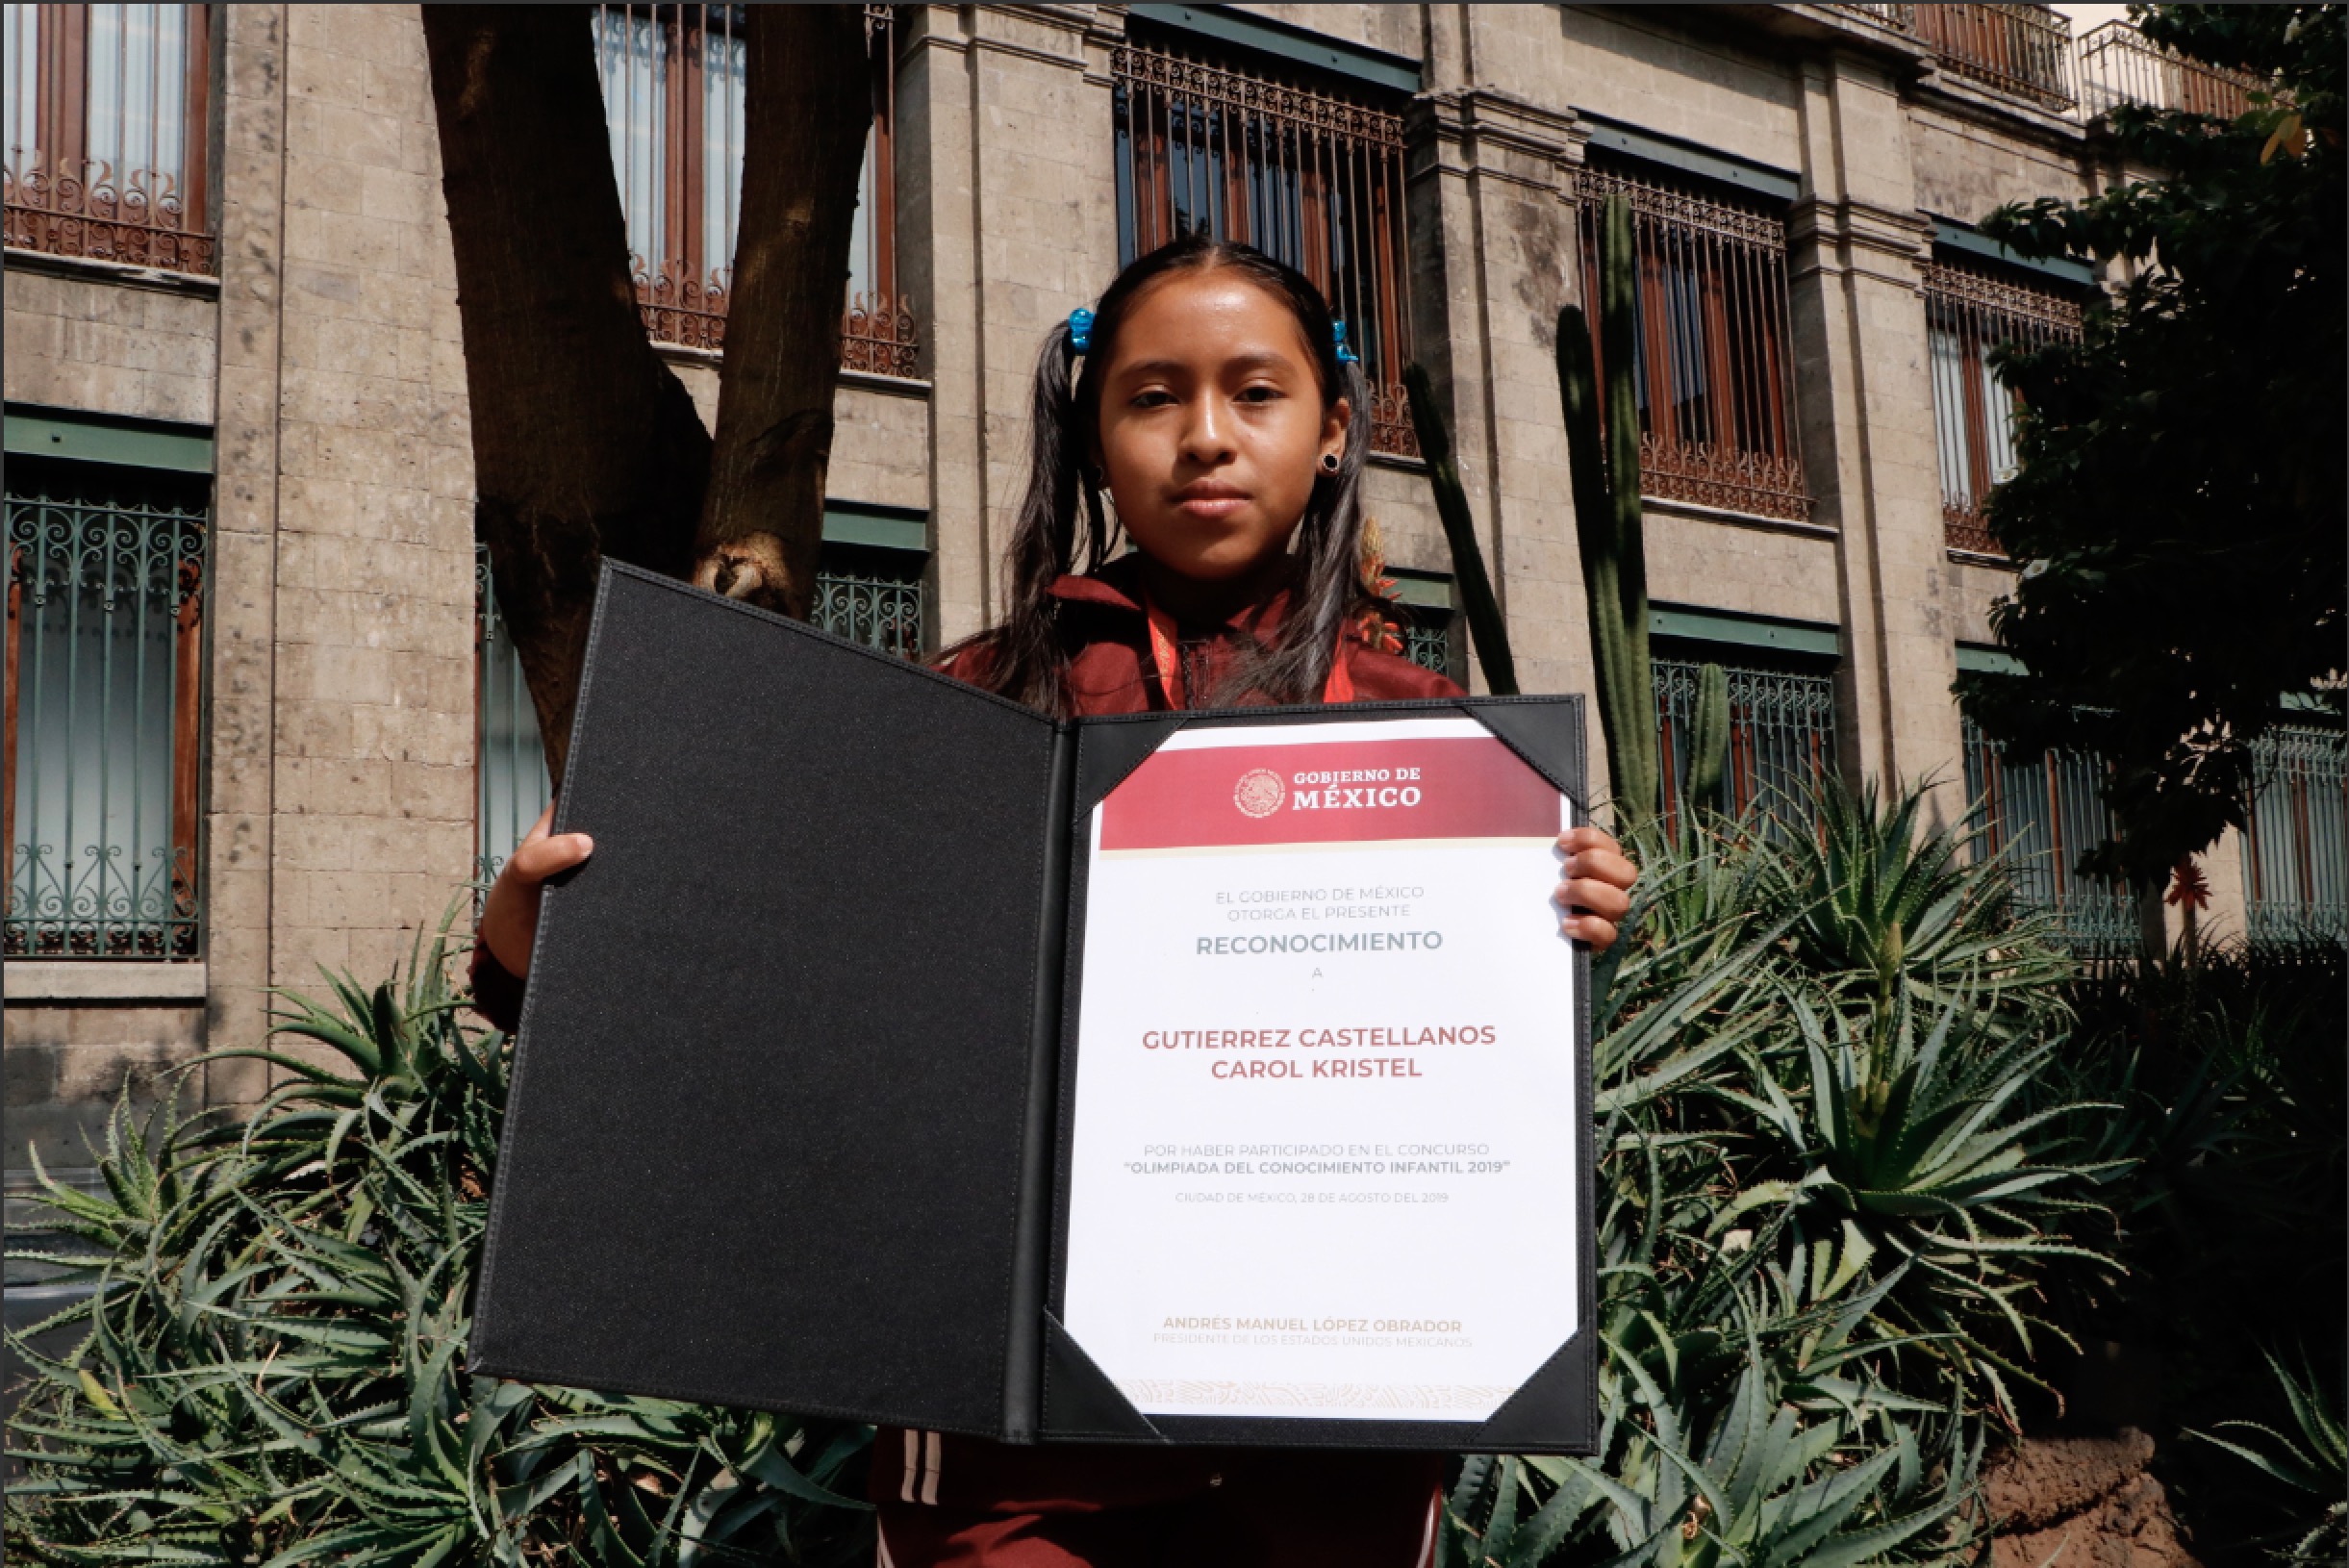 Carol Kristel Gutiérrez Castellanos, alumna del Conafe, recibe reconocimiento en manos del presidente Andrés Manuel López Obrador y de su esposa Beatriz Gutiérrez Müller.